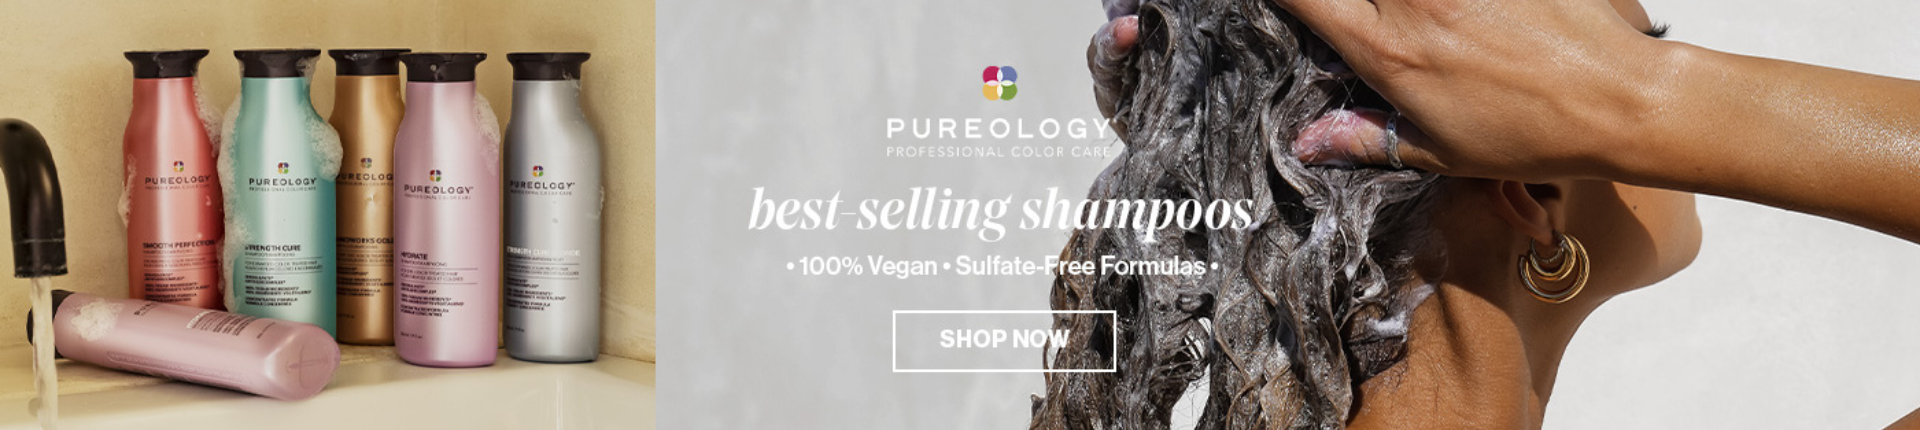 homepage_banner_pureology | L'Oréal Partner Shop